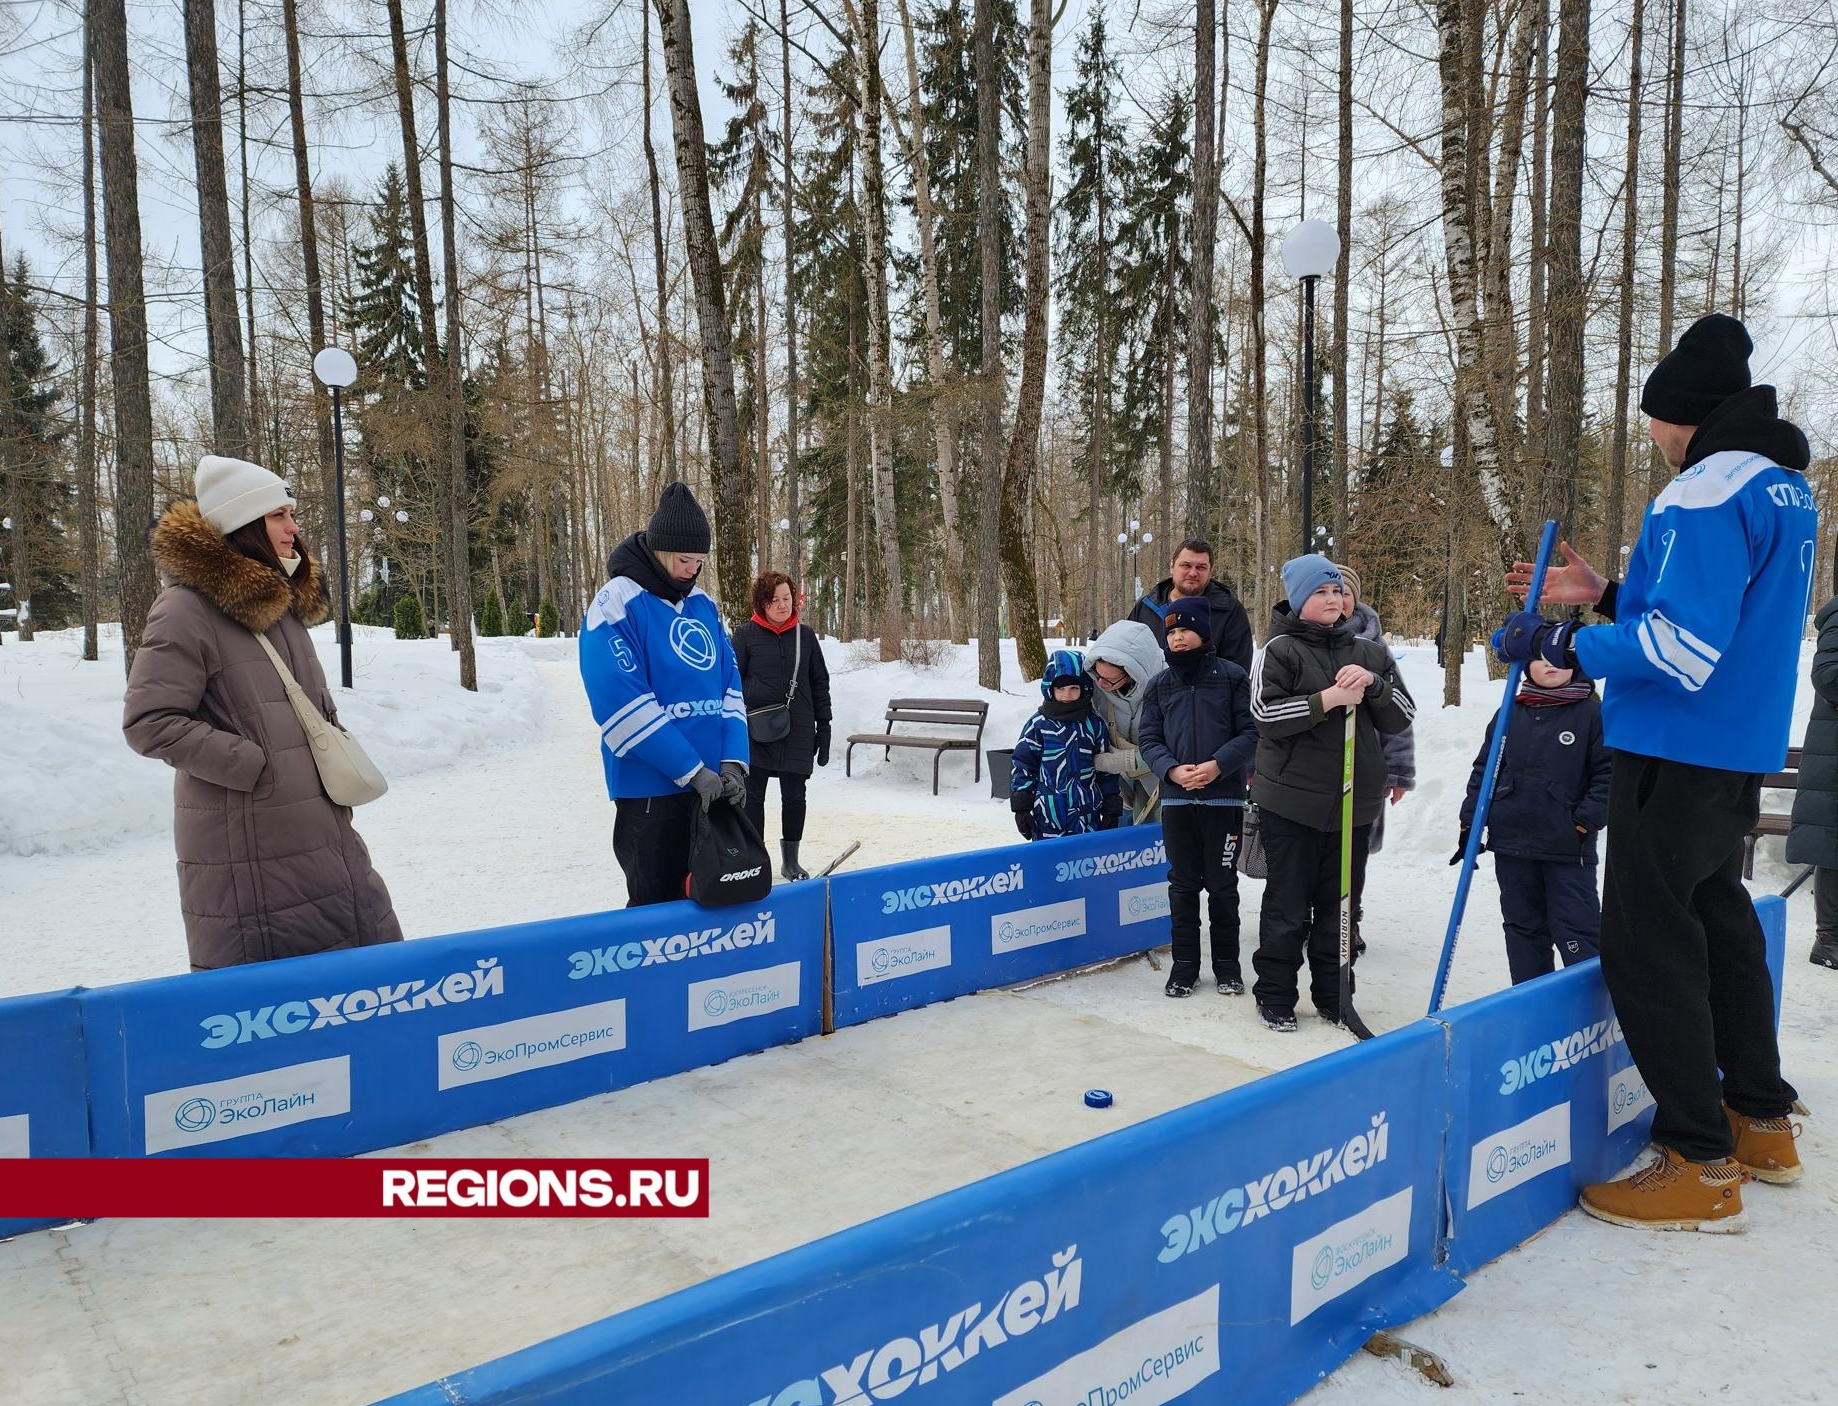 Воскресенцы сыграли в эко-хоккей на празднике в парке «Москворецкий»